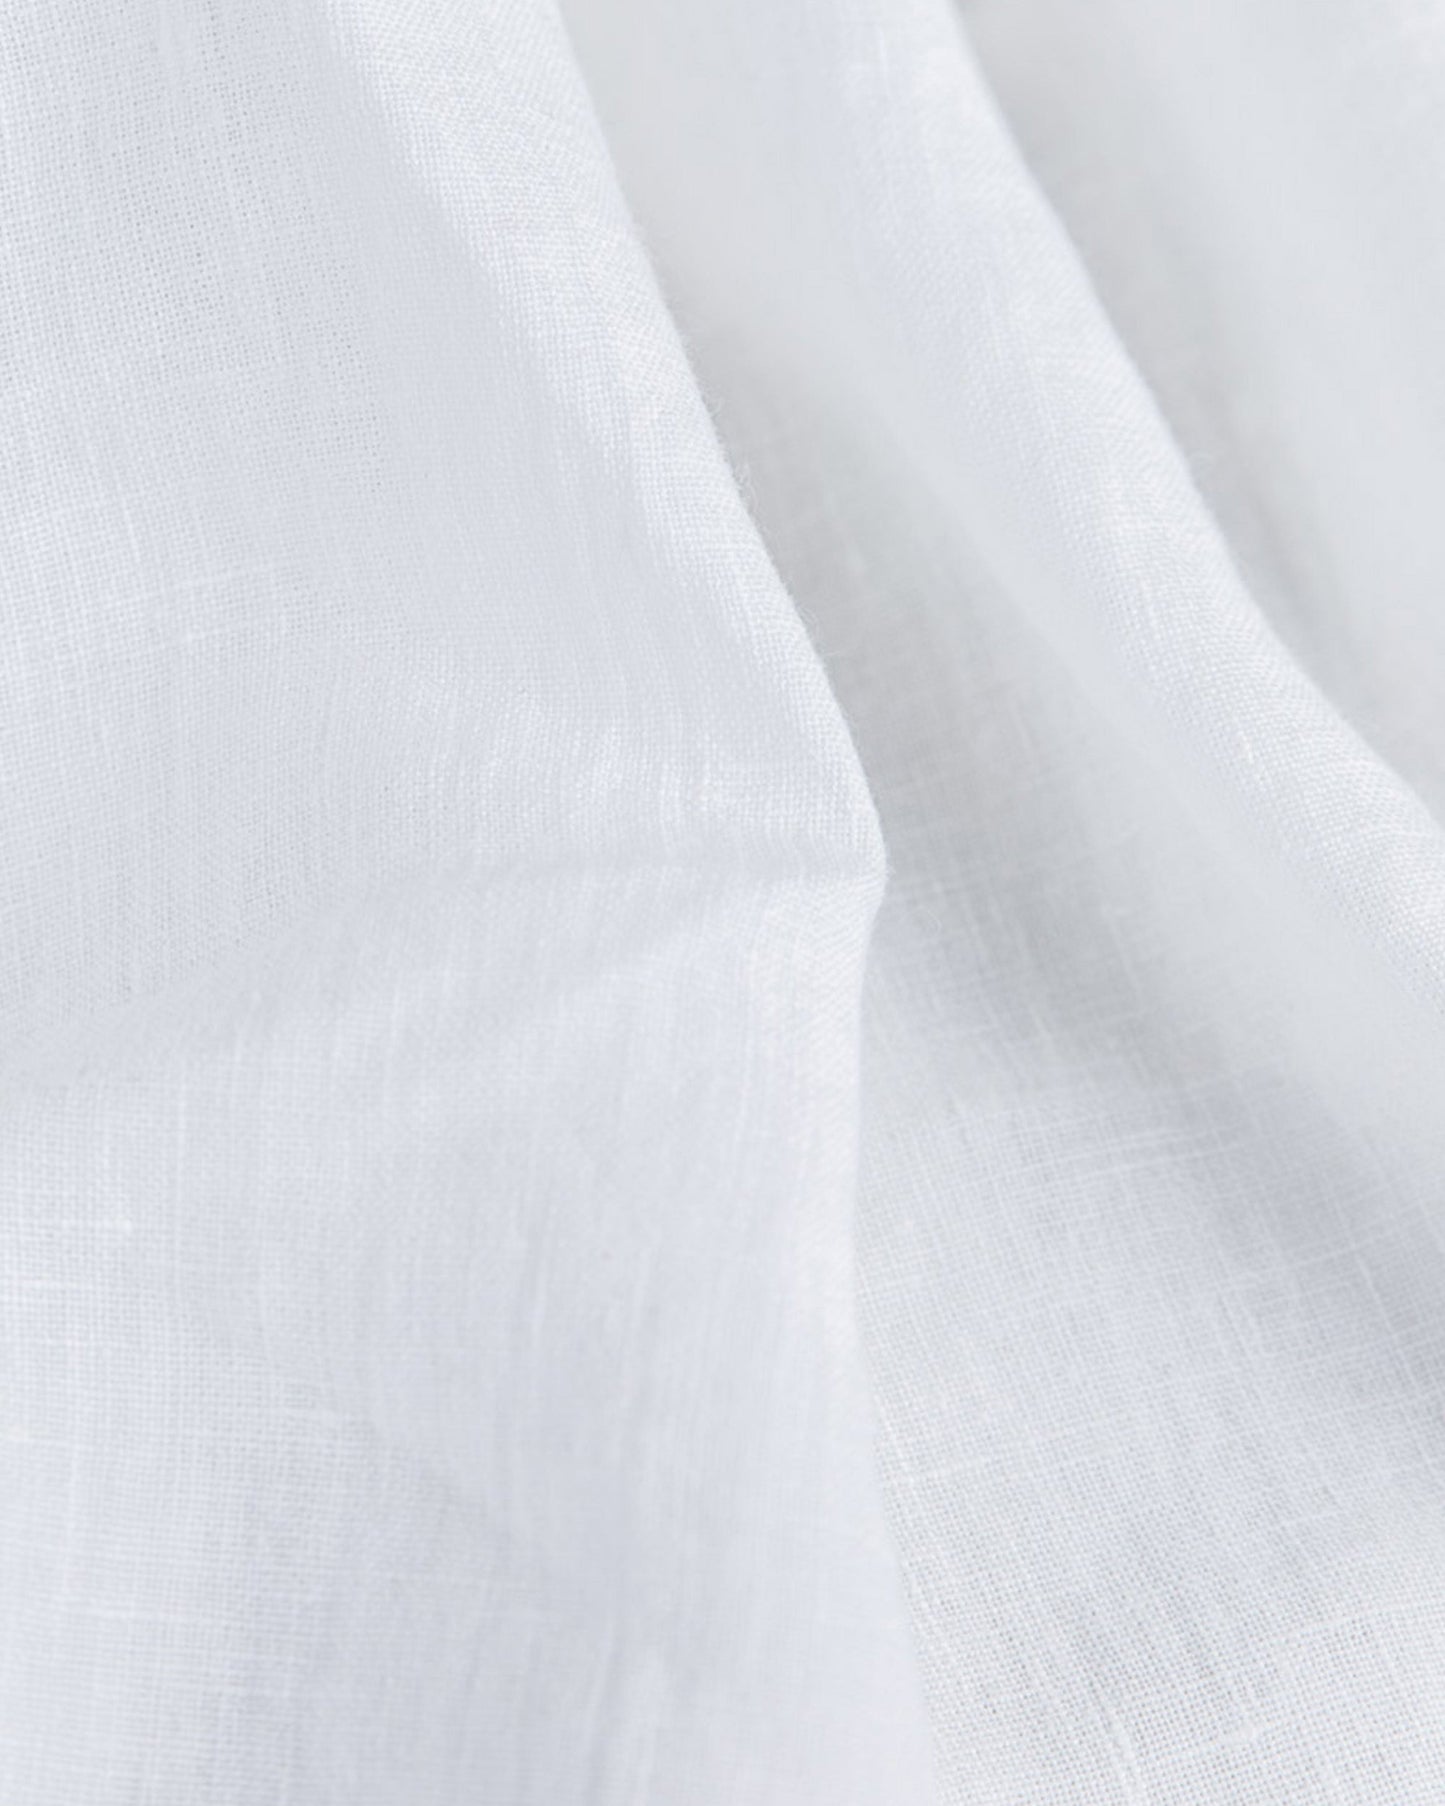 Custom size White linen duvet cover - MagicLinen